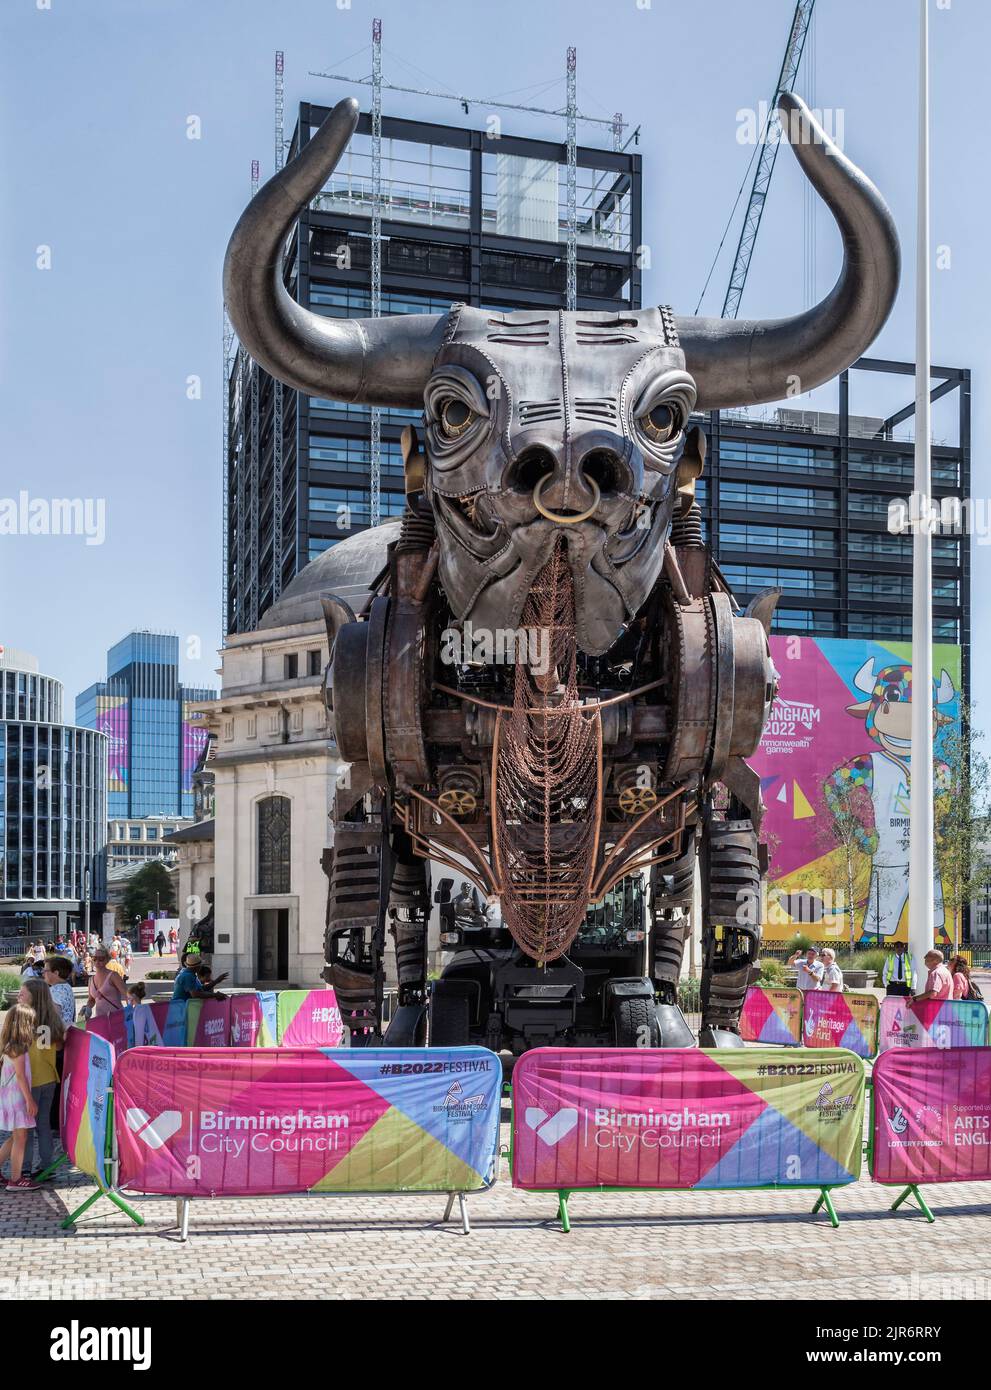 Les gens se émerveilleront devant le célèbre taureau de 10 mètres de haut qui fait rage lors de la cérémonie d'ouverture des Jeux du Commonwealth de 2022. Place du centenaire, Birmingham, Angleterre. Banque D'Images